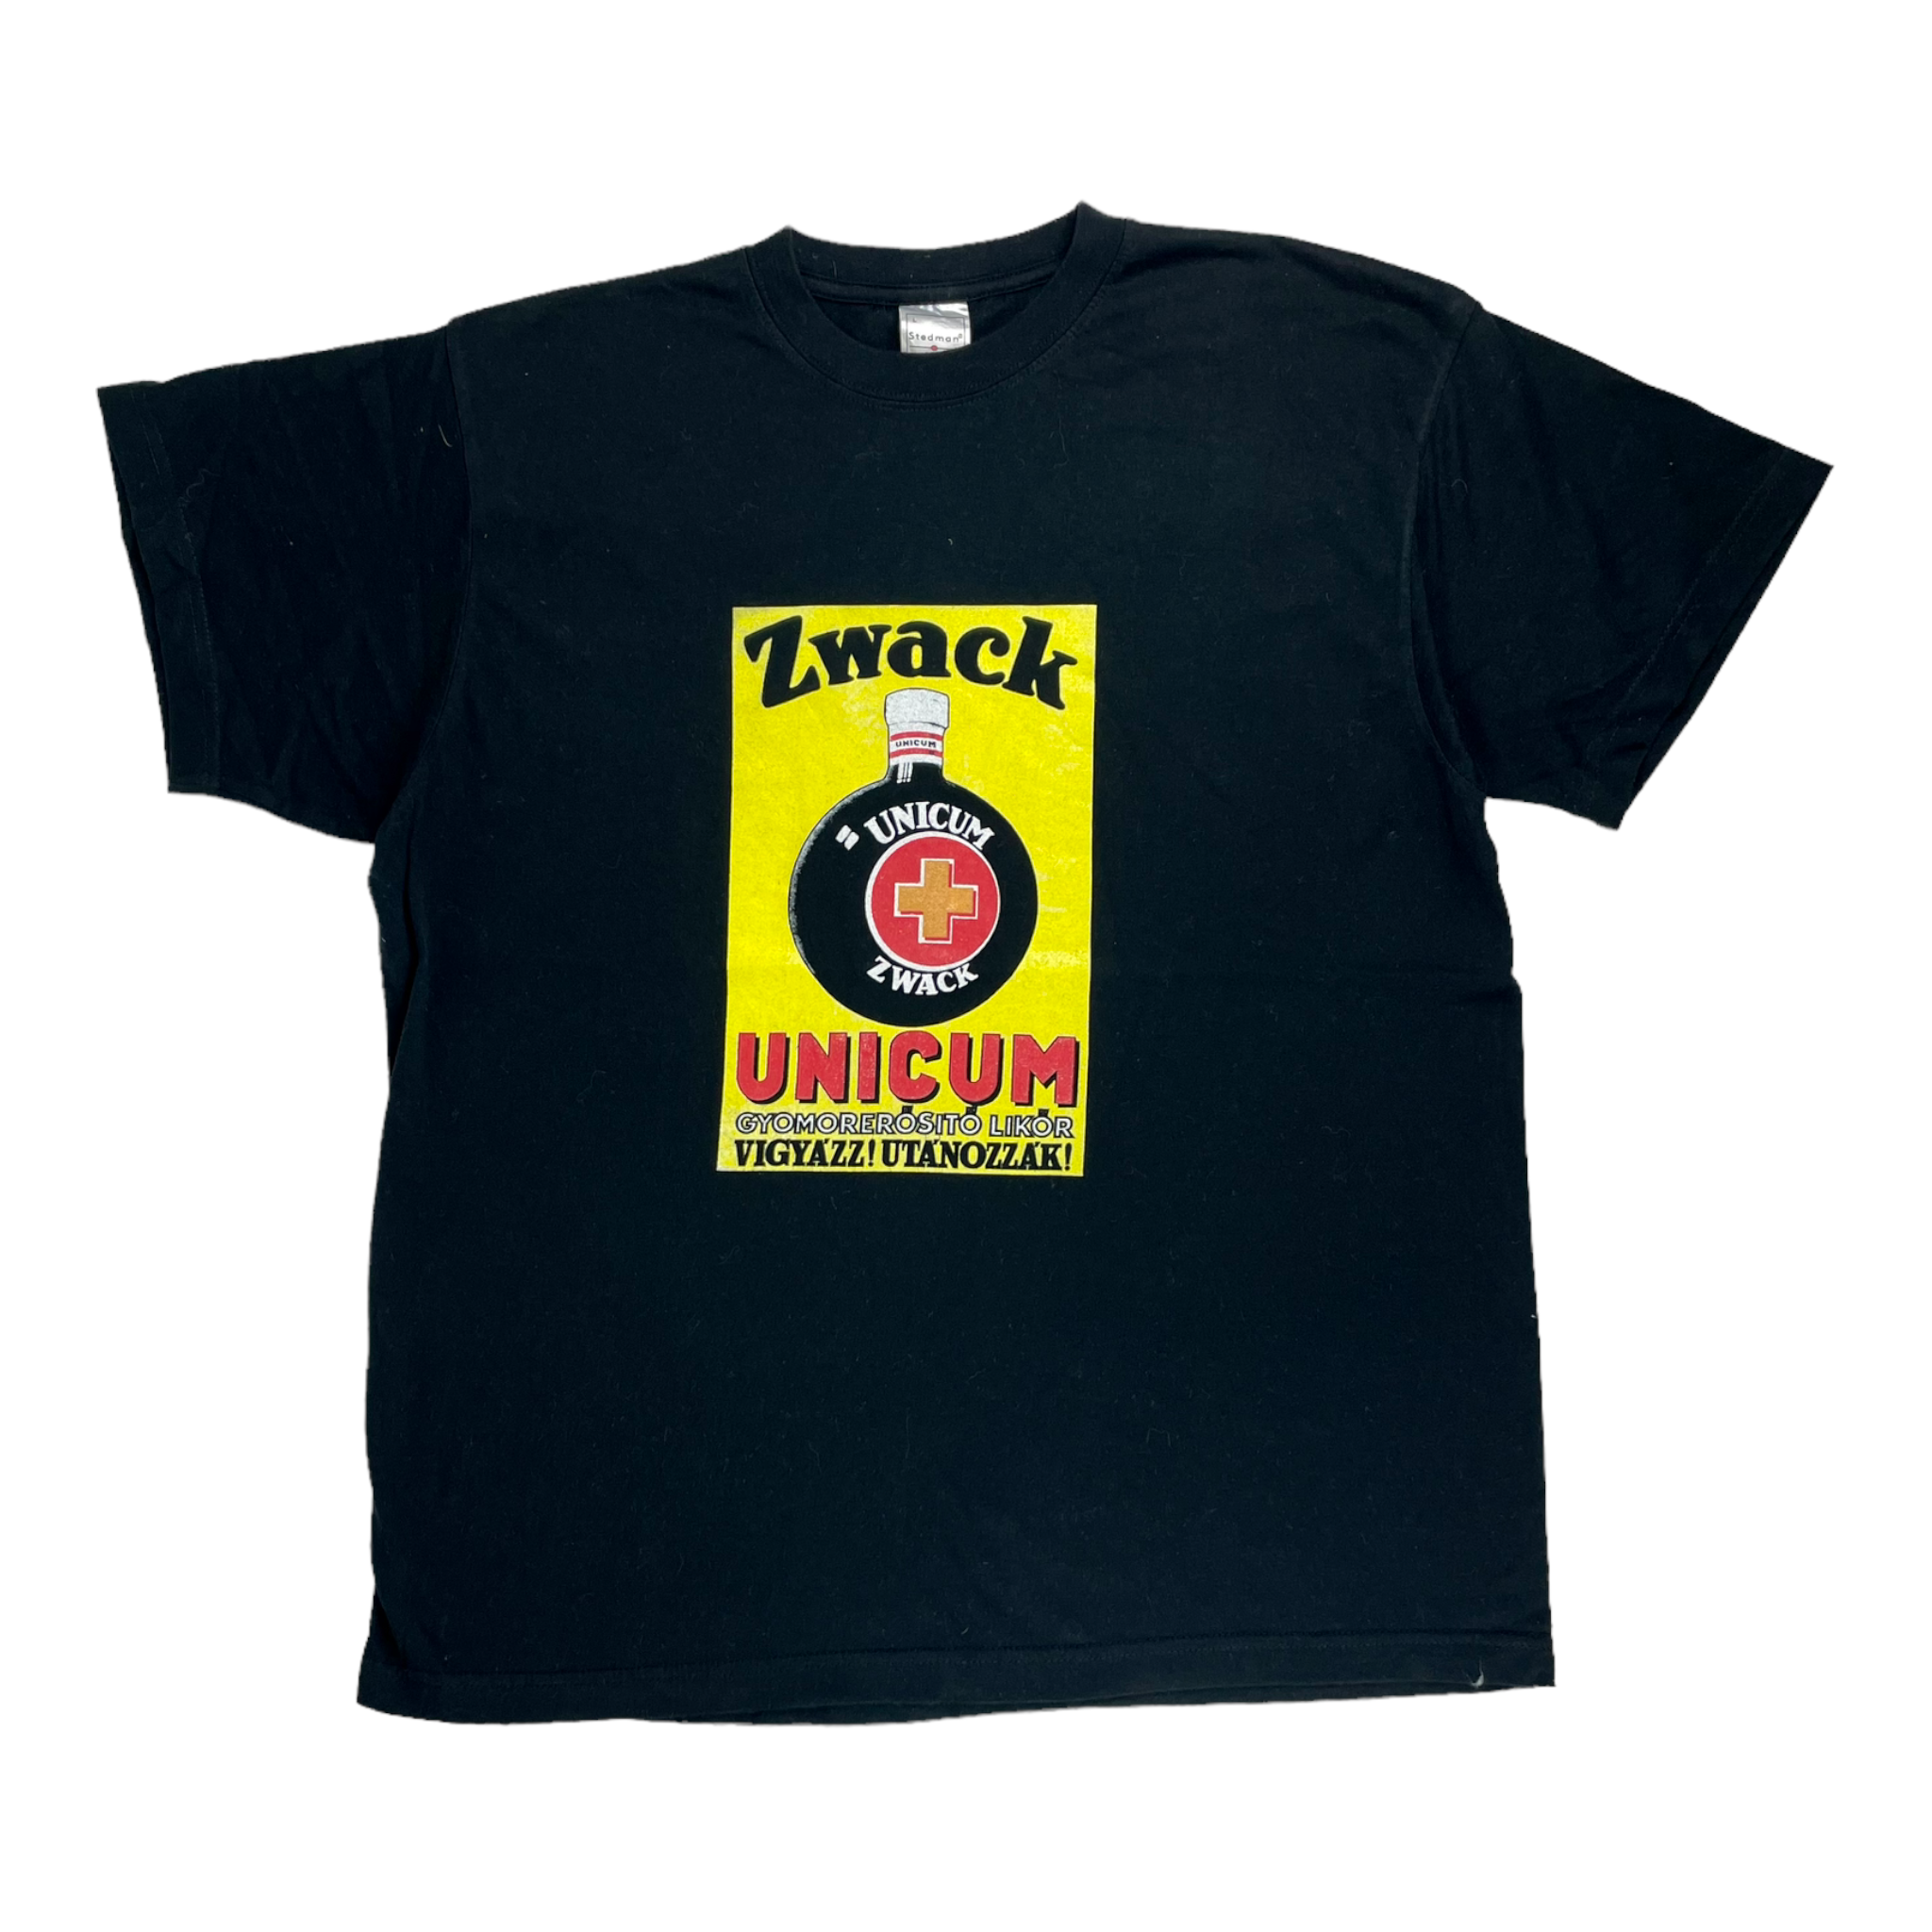 Vintage Zwack T-shirt - Restorecph